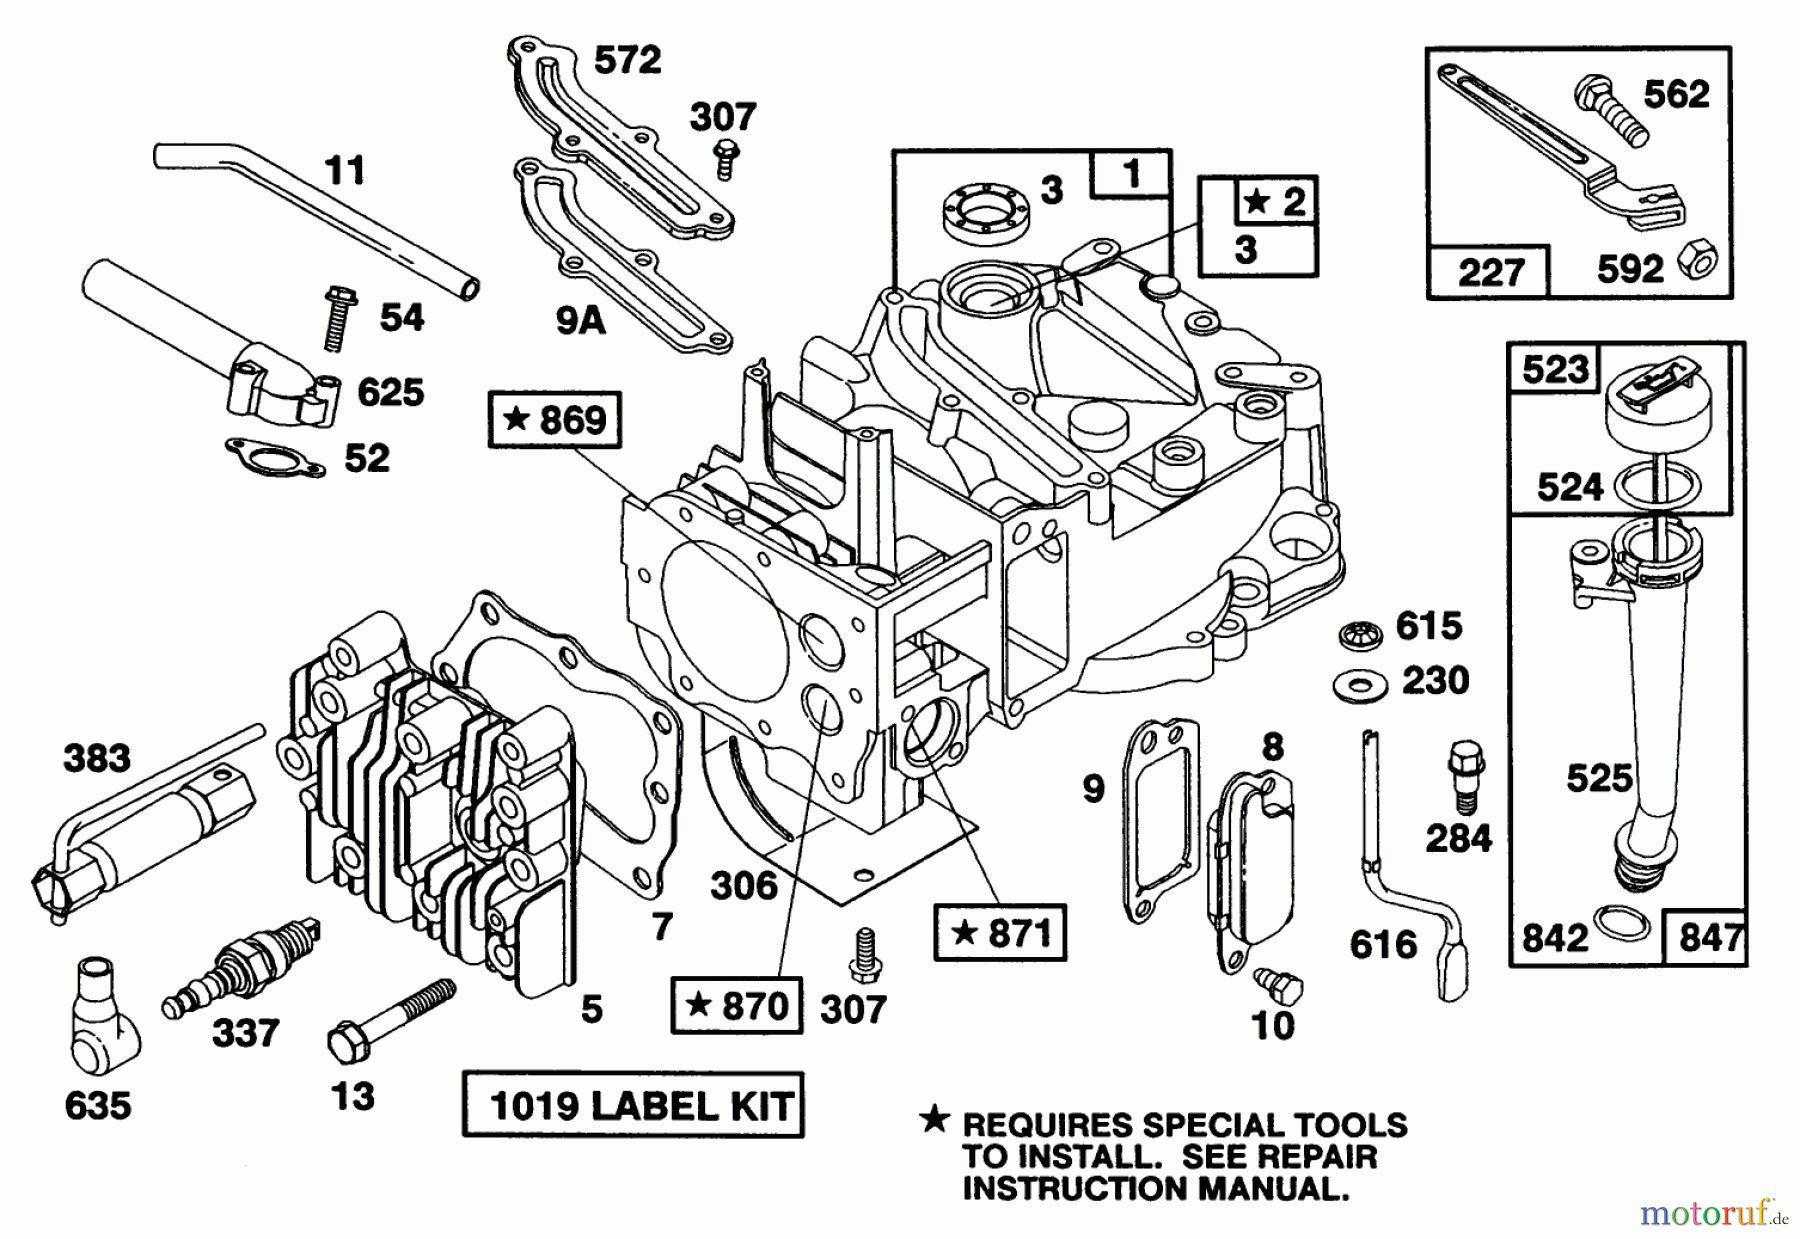  Toro Neu Mowers, Walk-Behind Seite 1 20214 - Toro Lawnmower, 1992 (2000001-2999999) ENGINE BRIGGS & STRATTON MODEL 124702-3115-01 #1